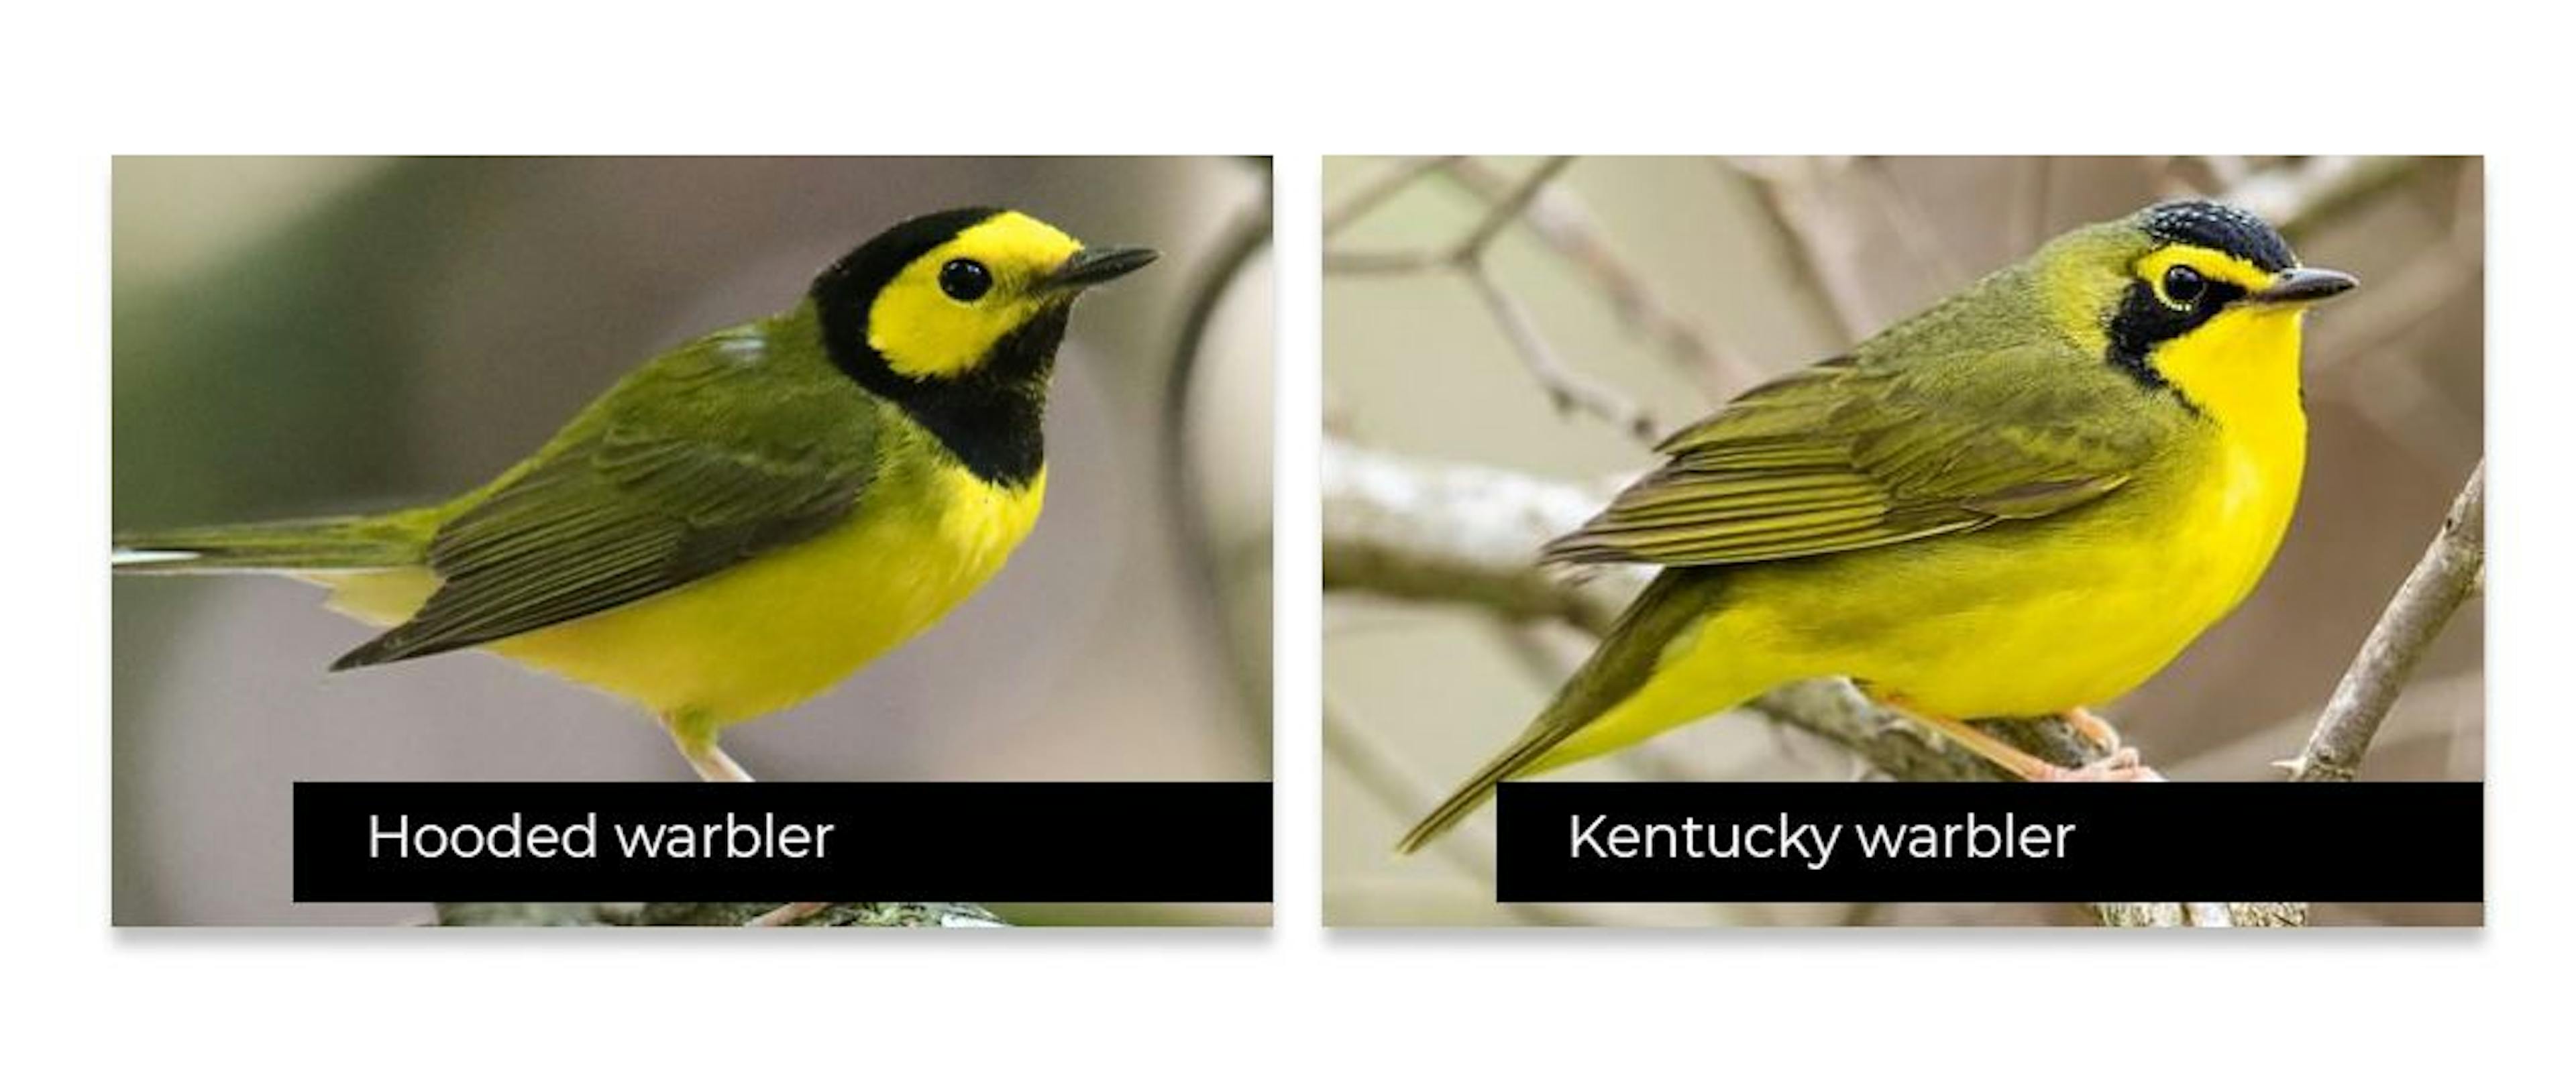 일부 새는 서로 매우 유사해 정확하게 감지하기가 어렵습니다.